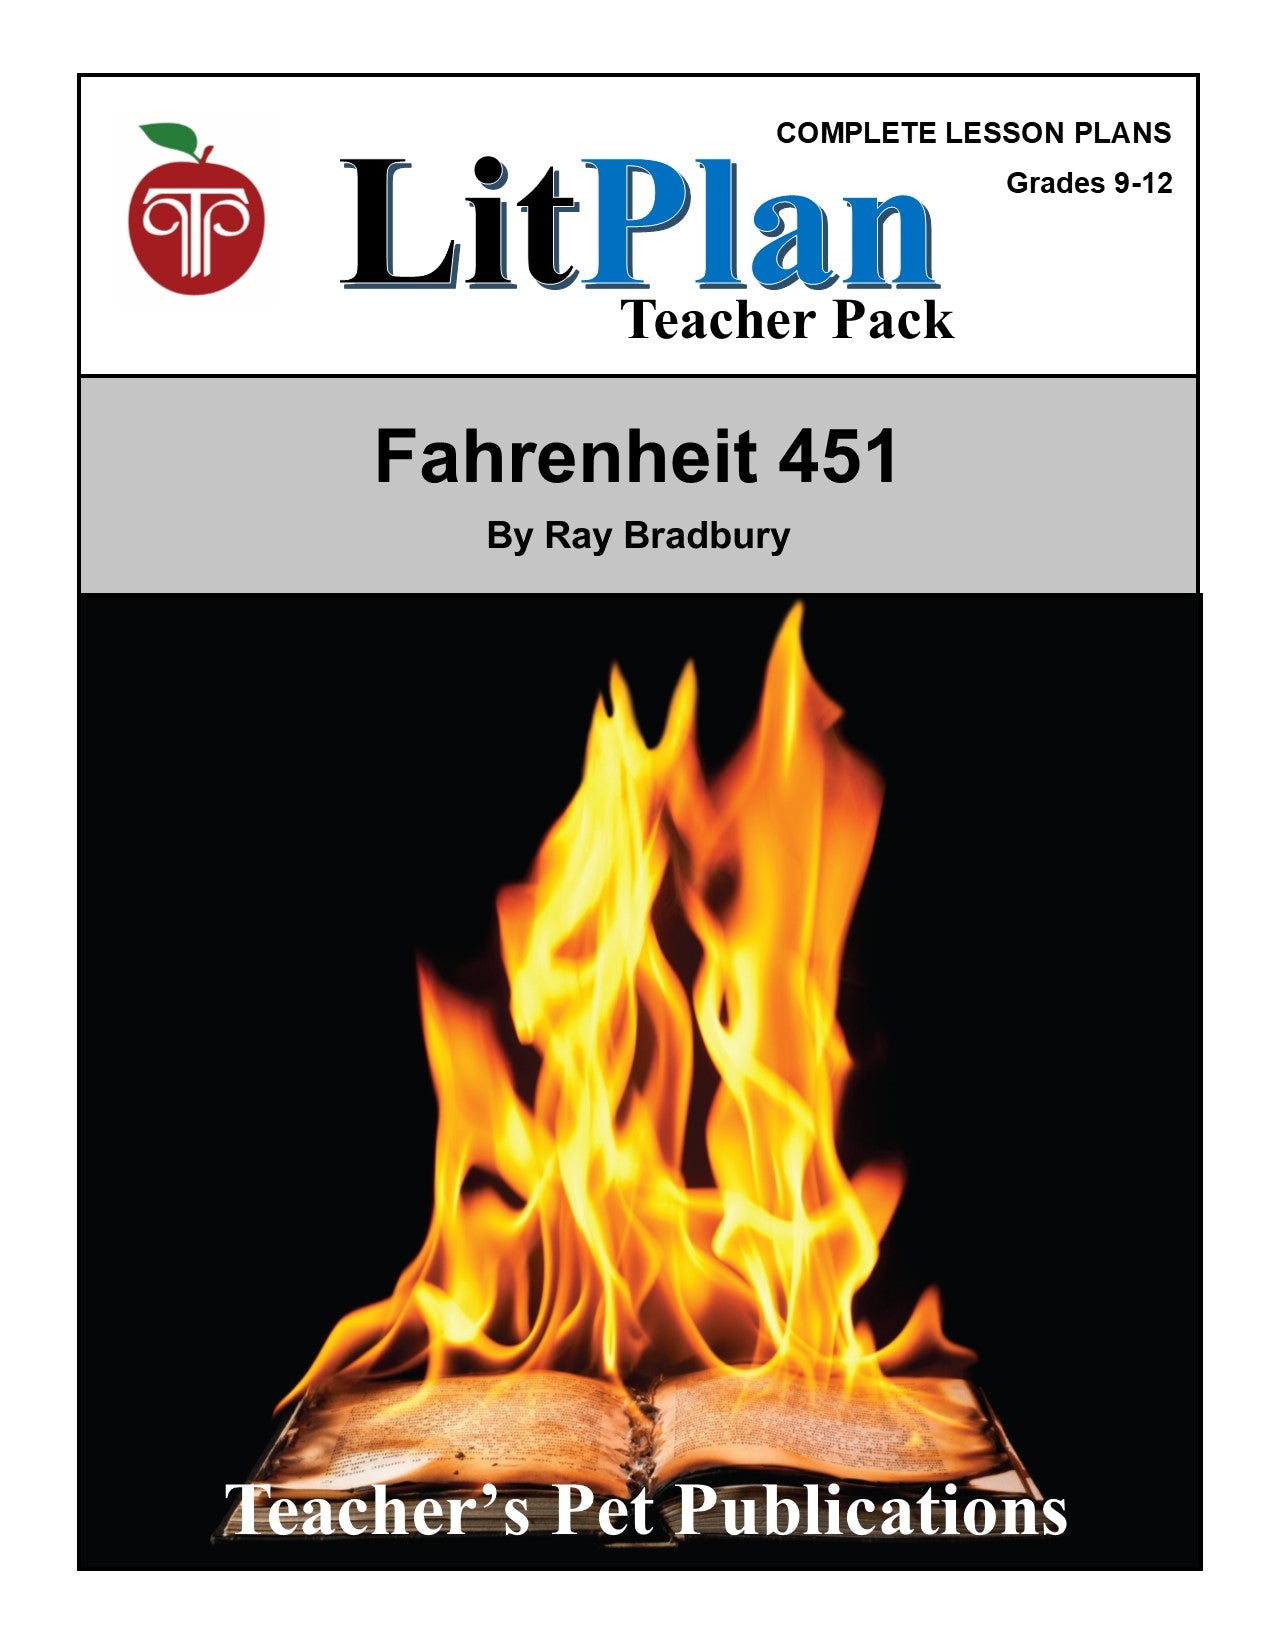 Fahrenheit 451: LitPlan Teacher Pack Grades 9-12